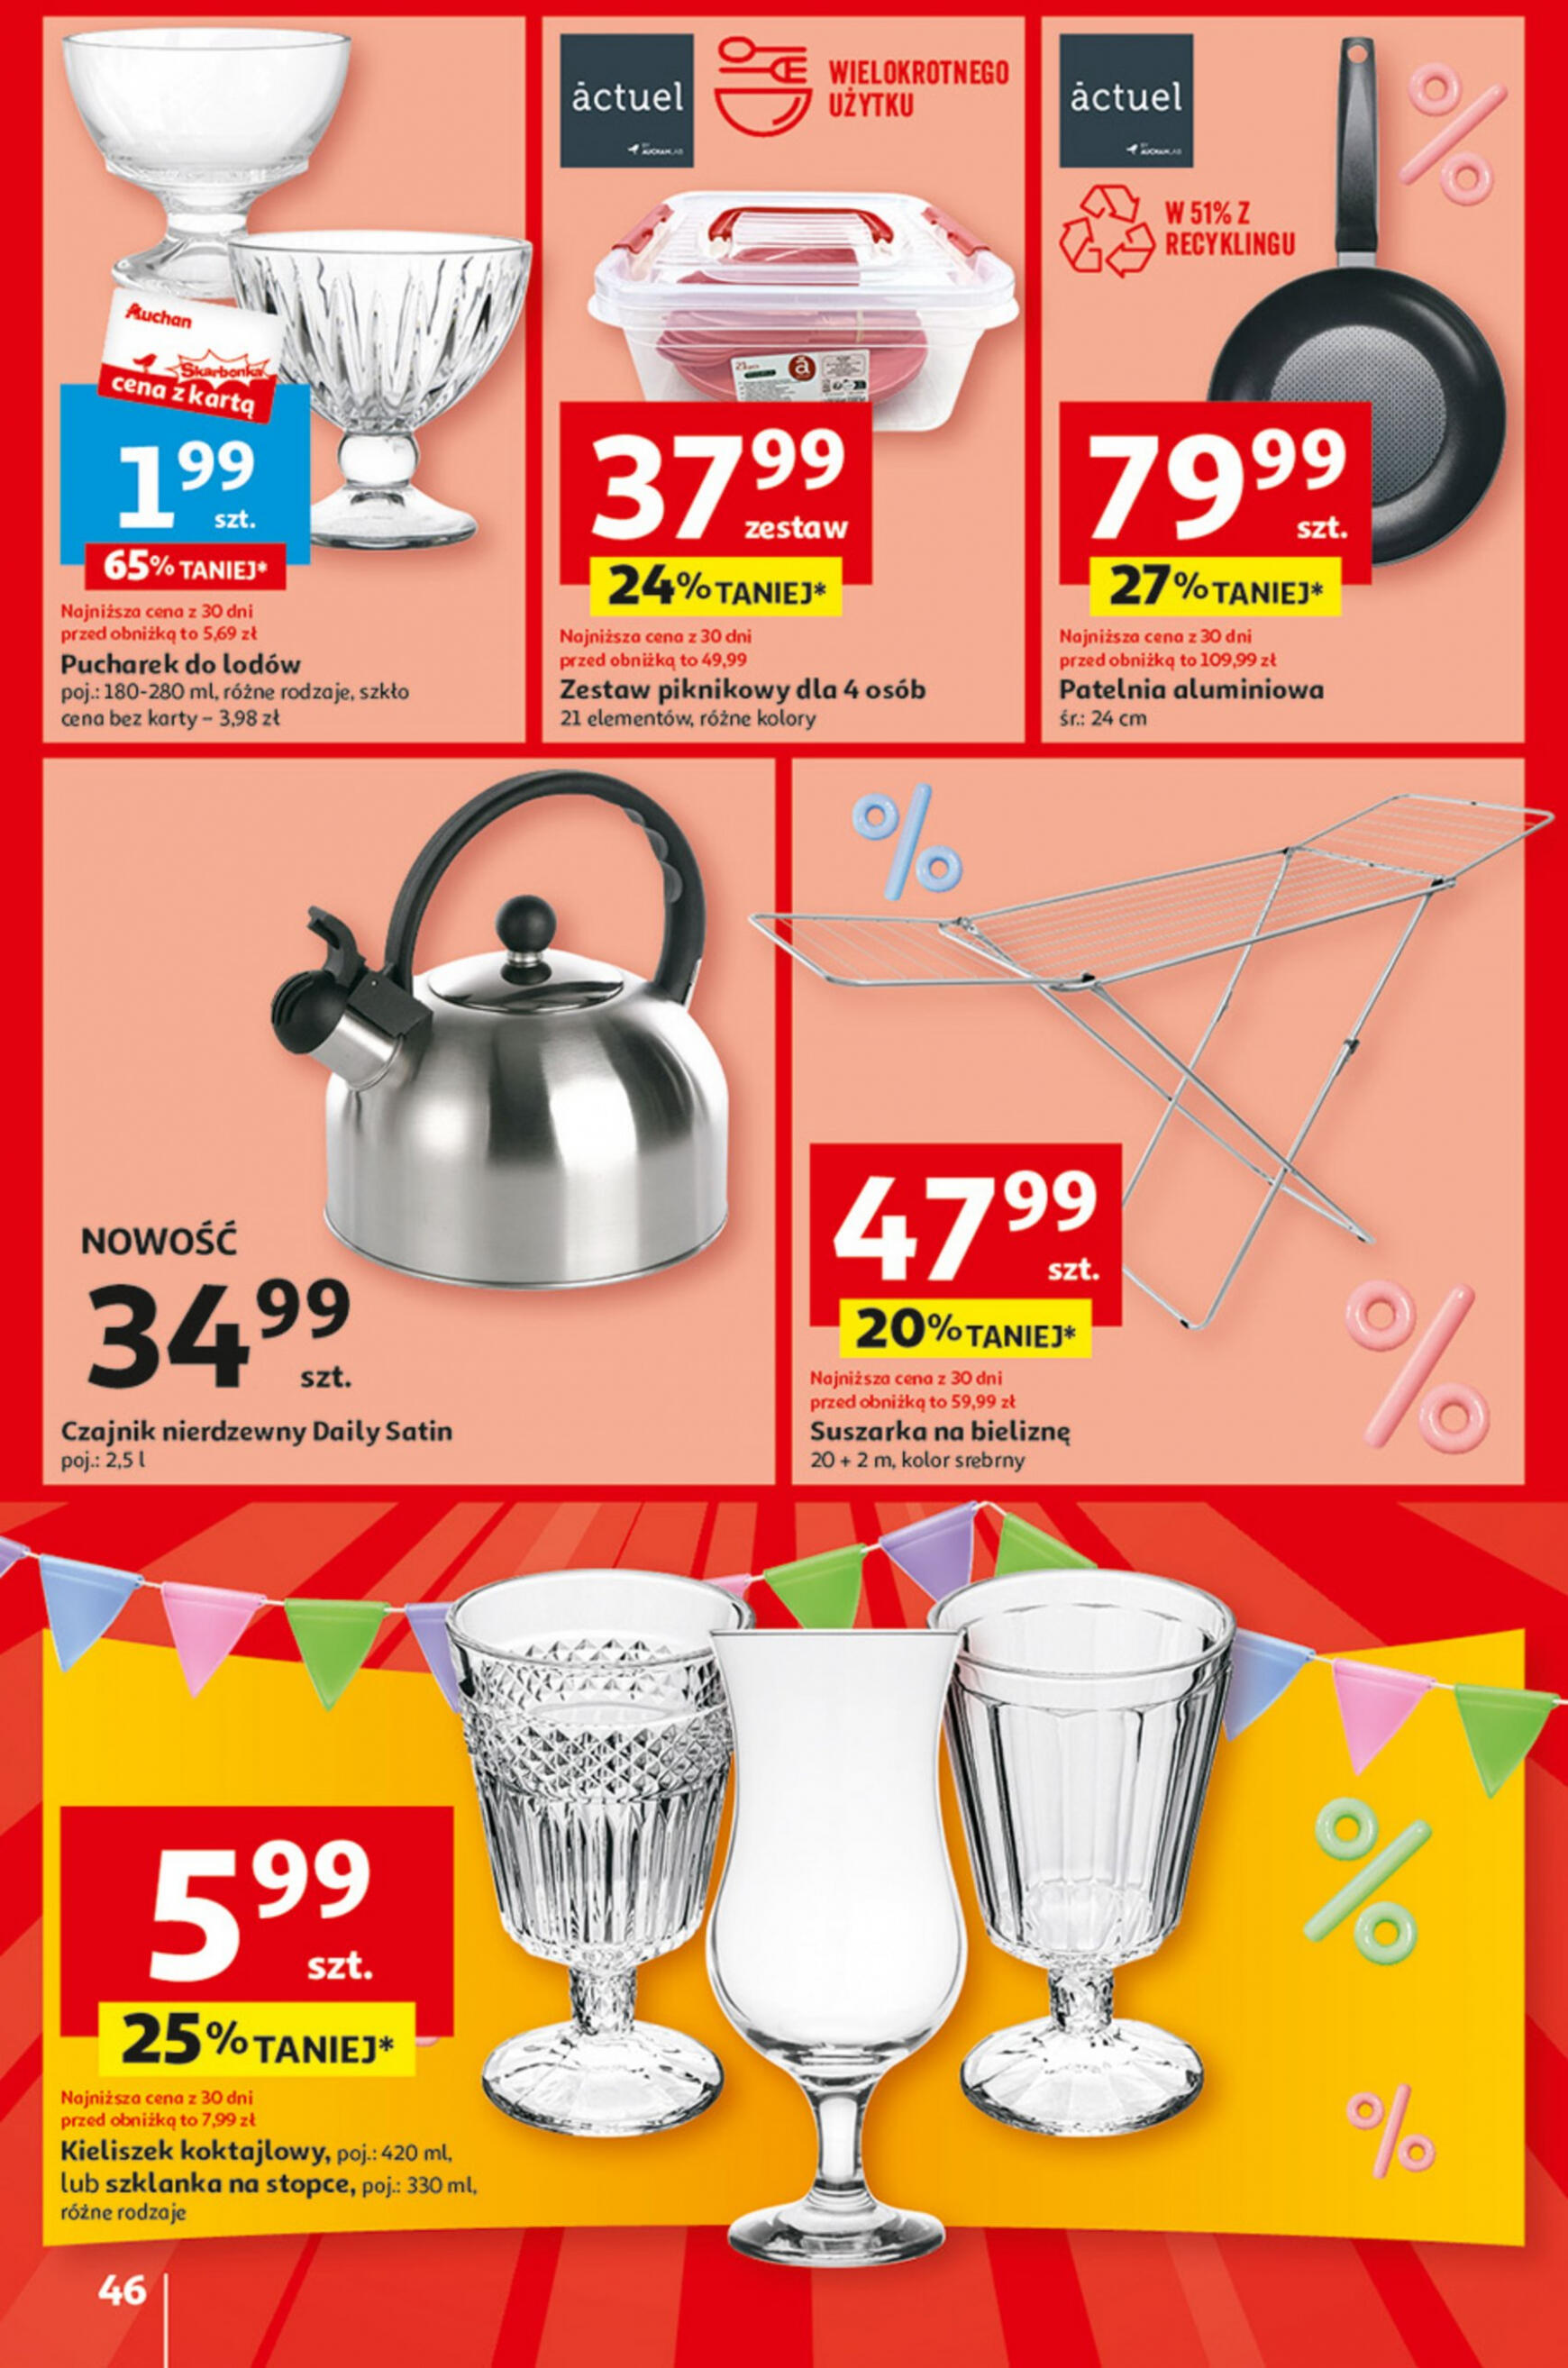 auchan - Hipermarket Auchan - Gazetka Jeszcze taniej na urodziny gazetka aktualna ważna od 09.05. - 15.05. - page: 46